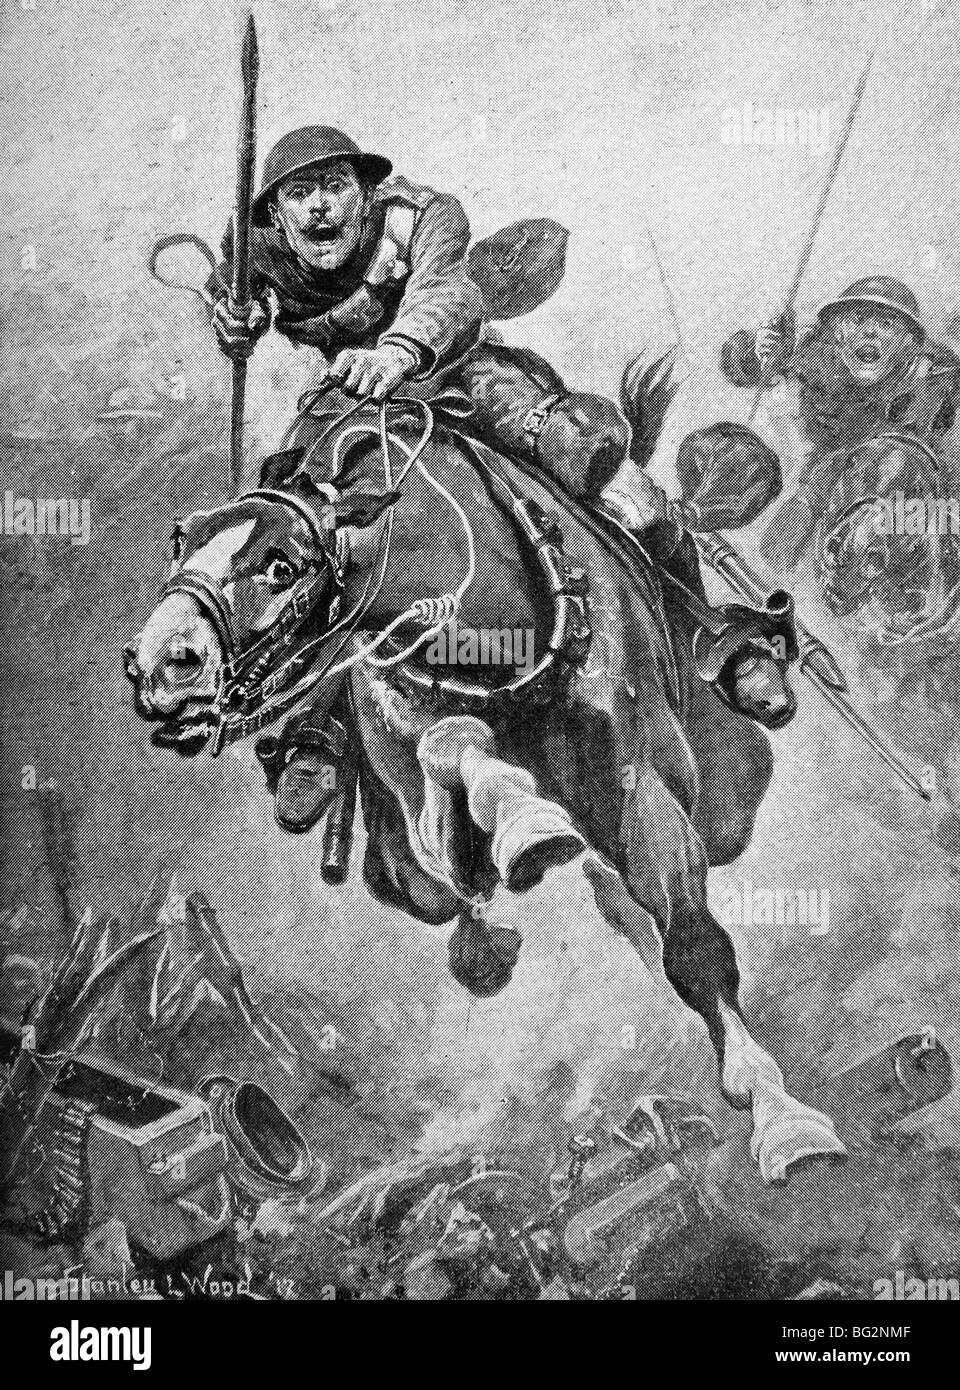 Guerra mundial contemporáneo la ilustración de una carga de caballería por las tropas británicas en Francia. Foto de stock